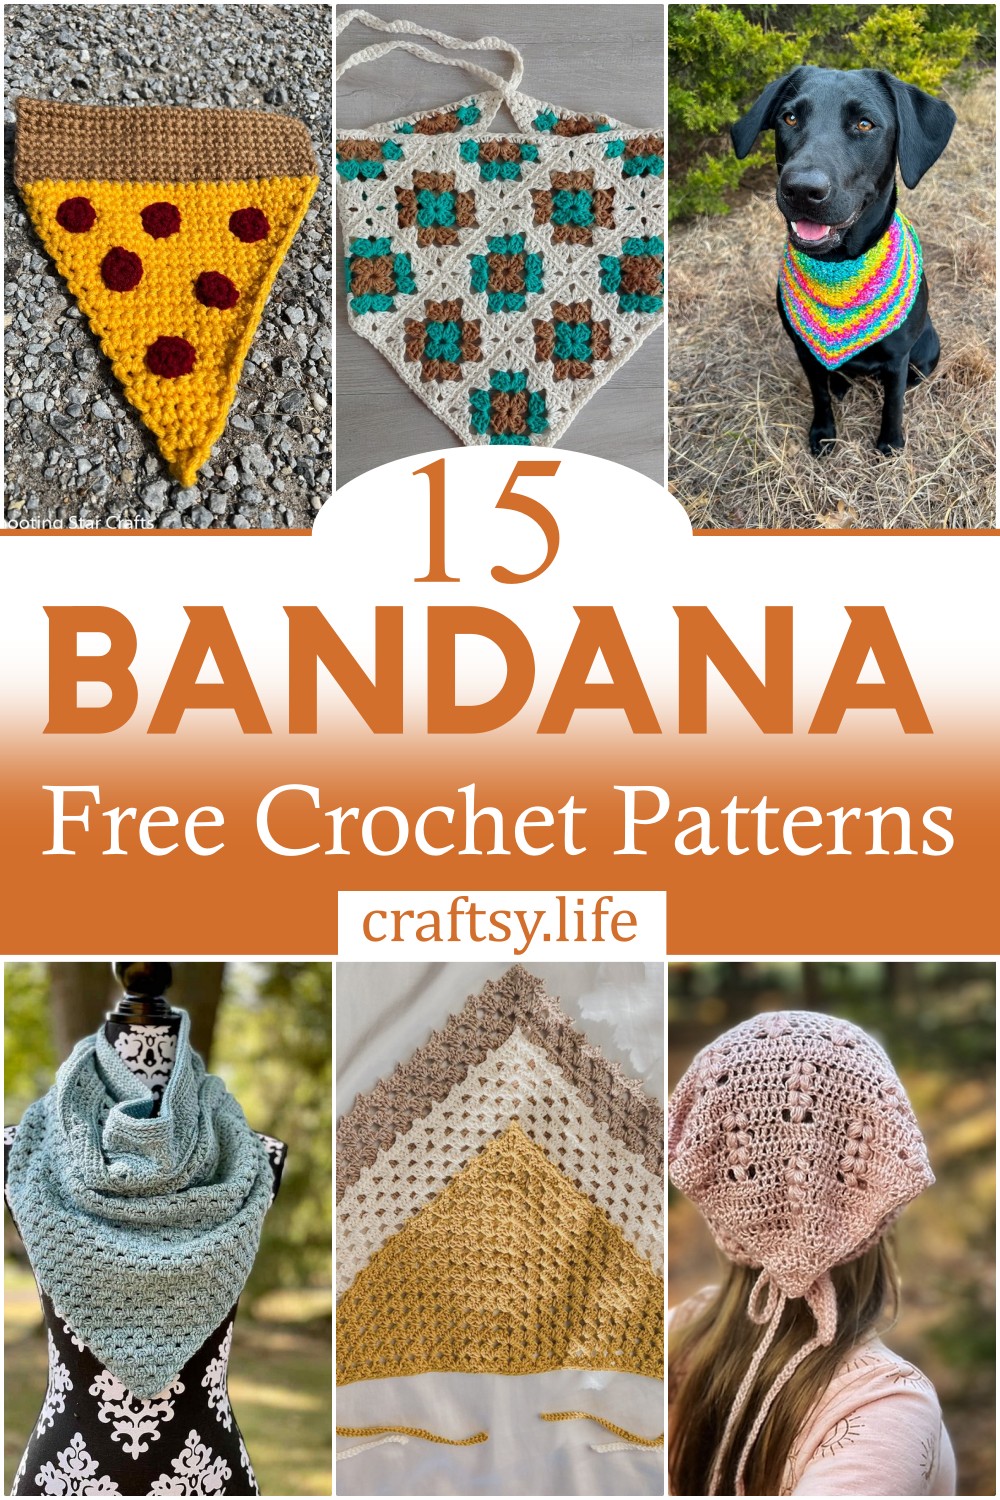 Crochet Bandana Free Patterns 1